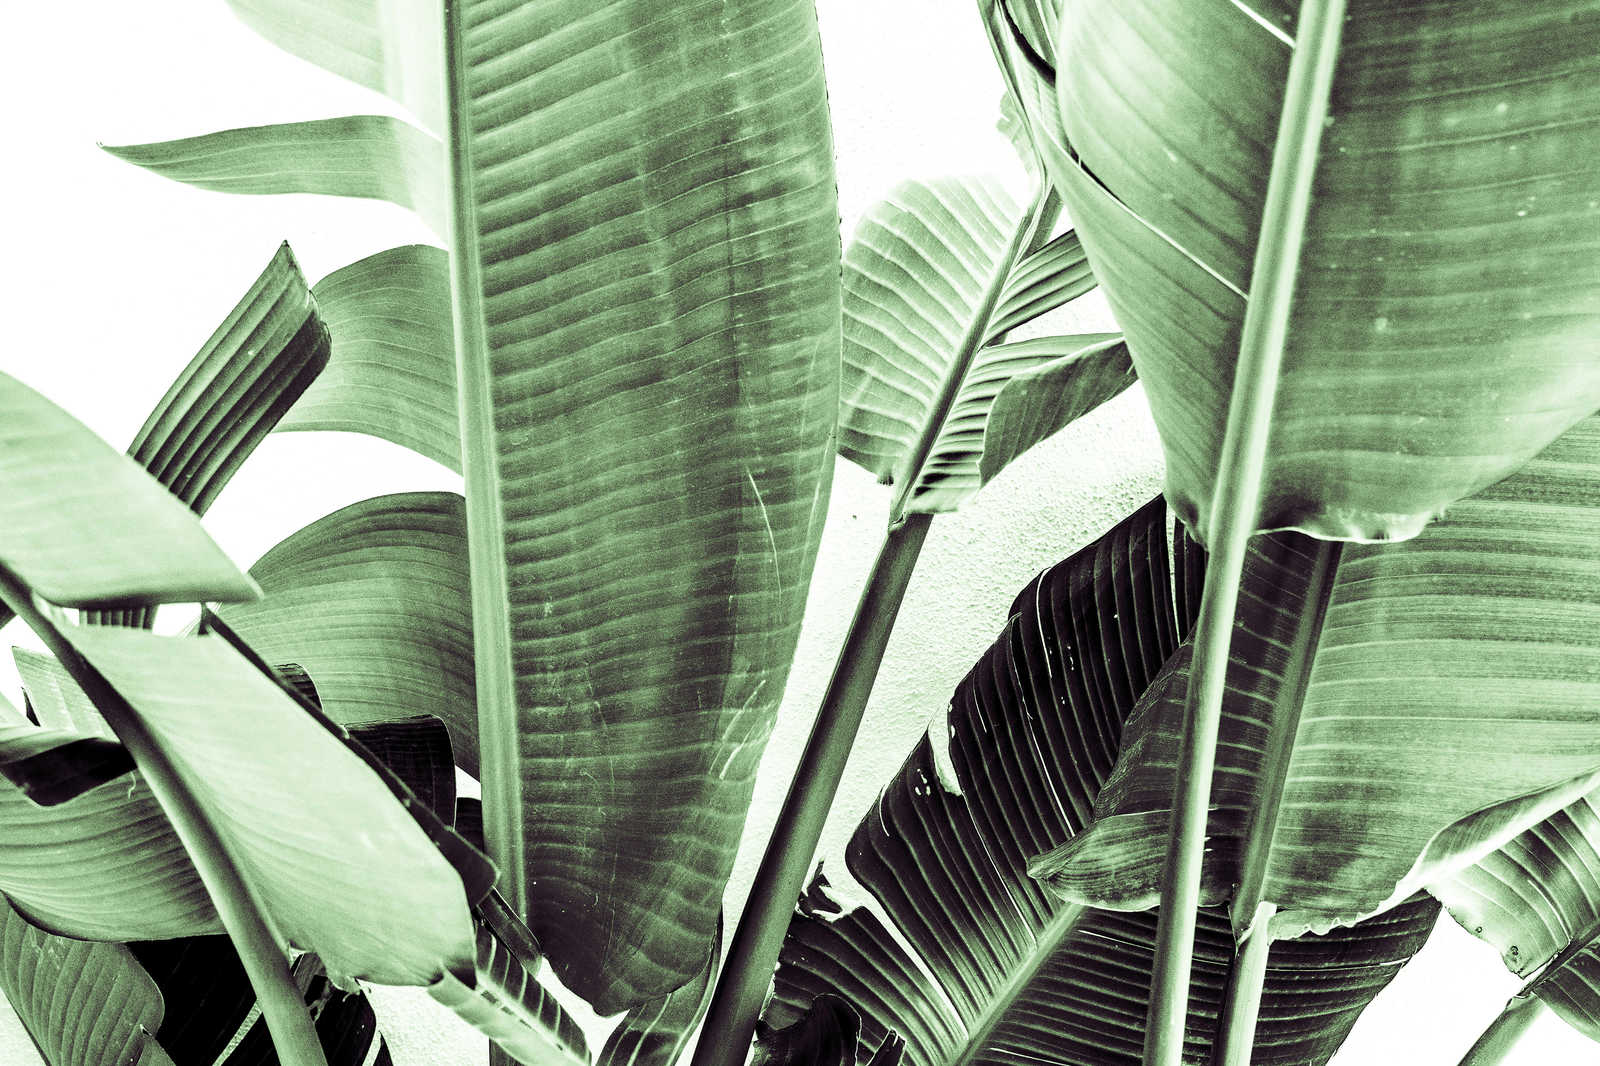             Toile Détail de feuilles de palmier - 0,90 m x 0,60 m
        